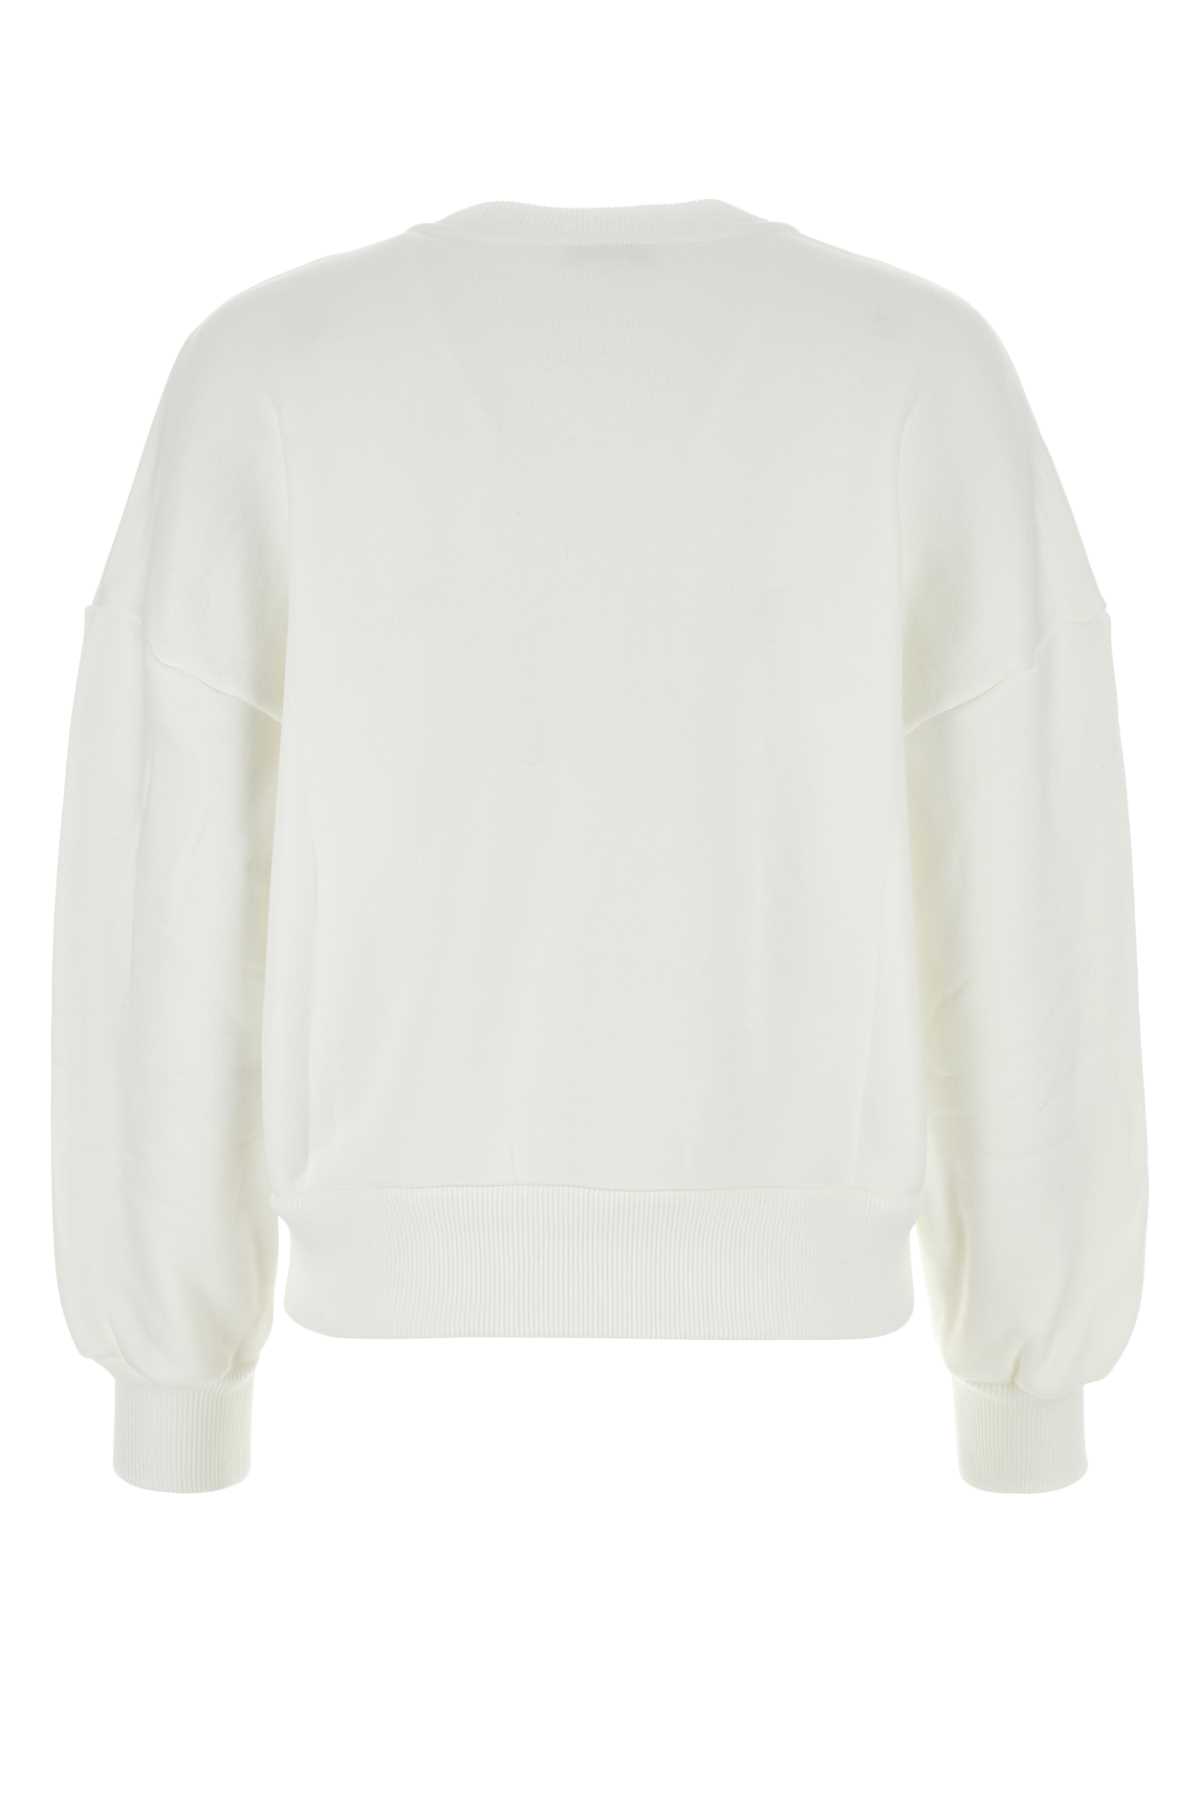 Alexander Mcqueen White Cotton Sweatshirt